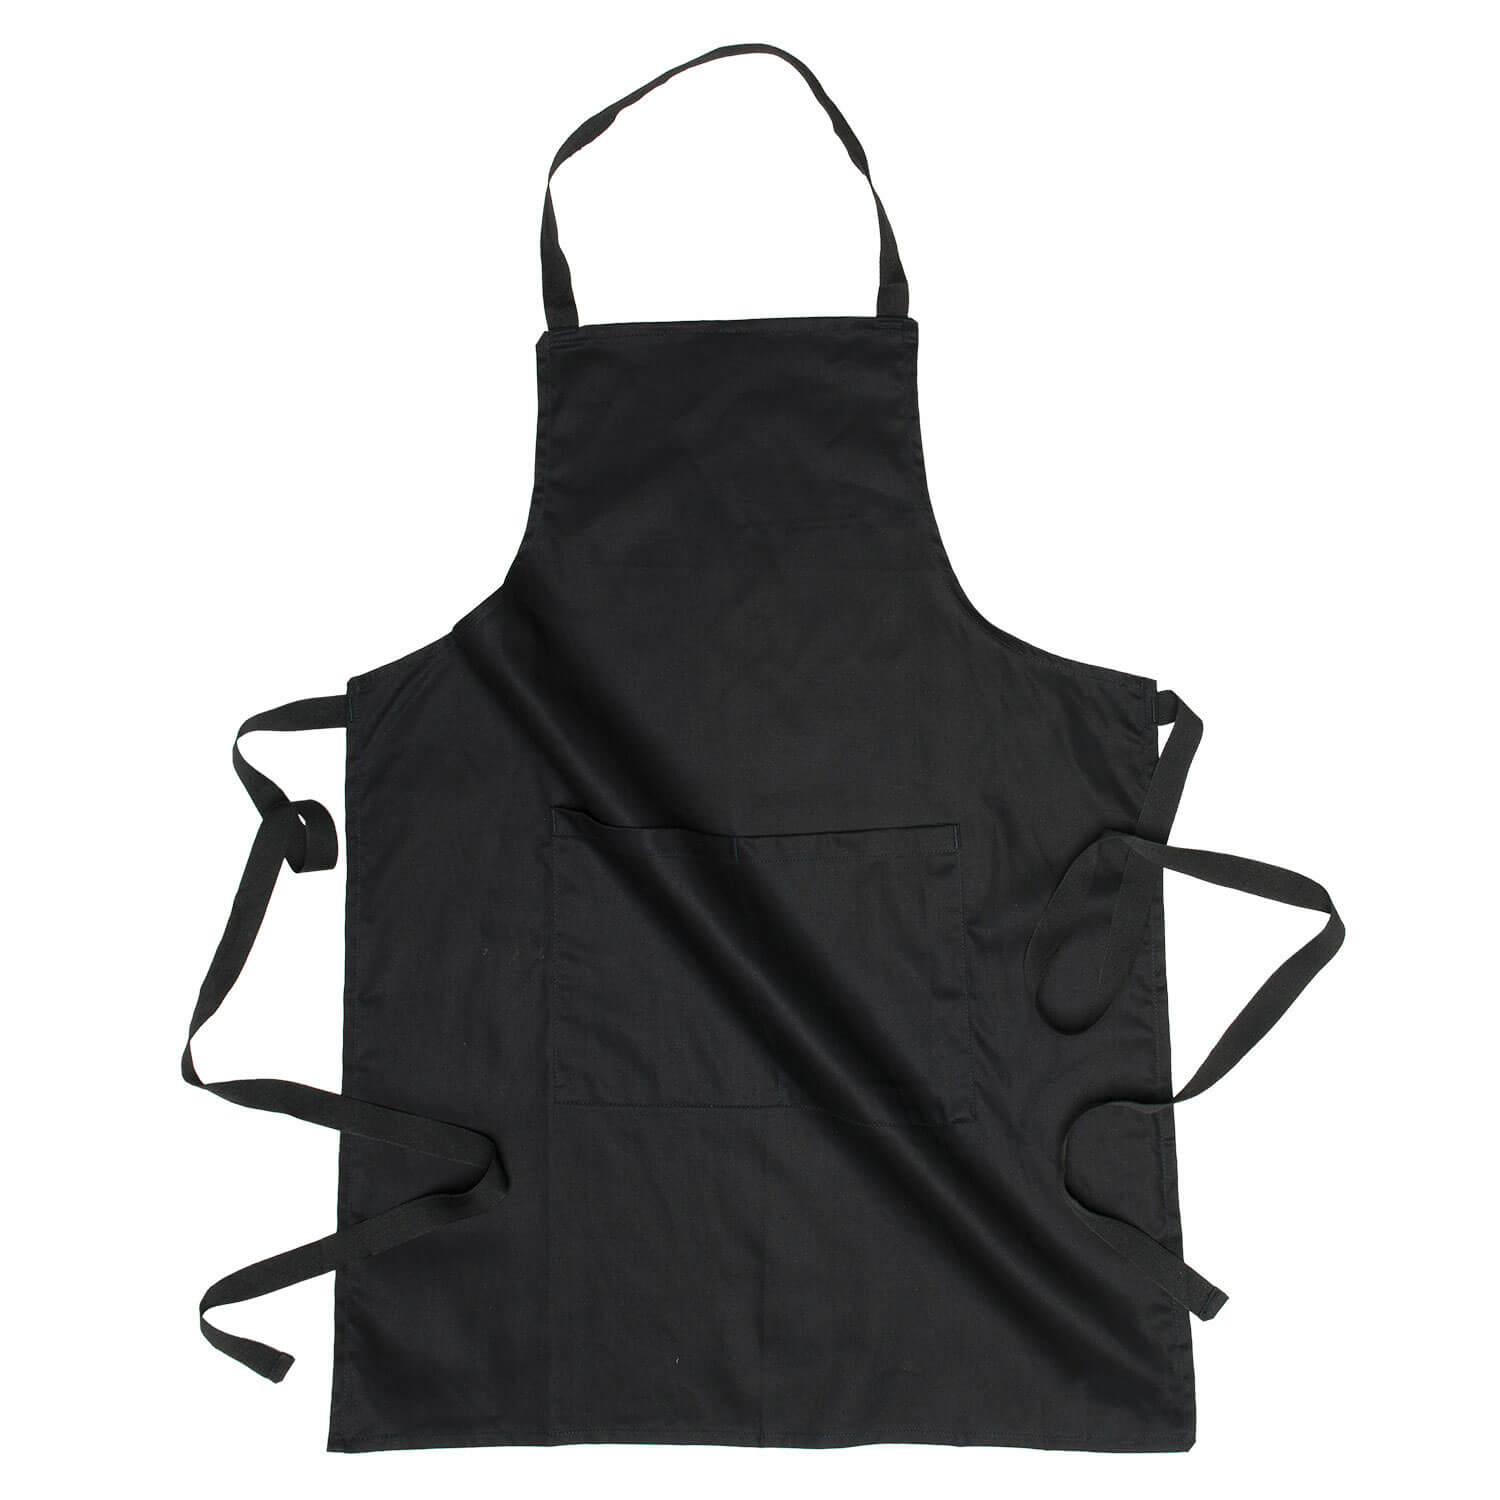 javlin full chefwear kitchen apron black 4650 BL PC